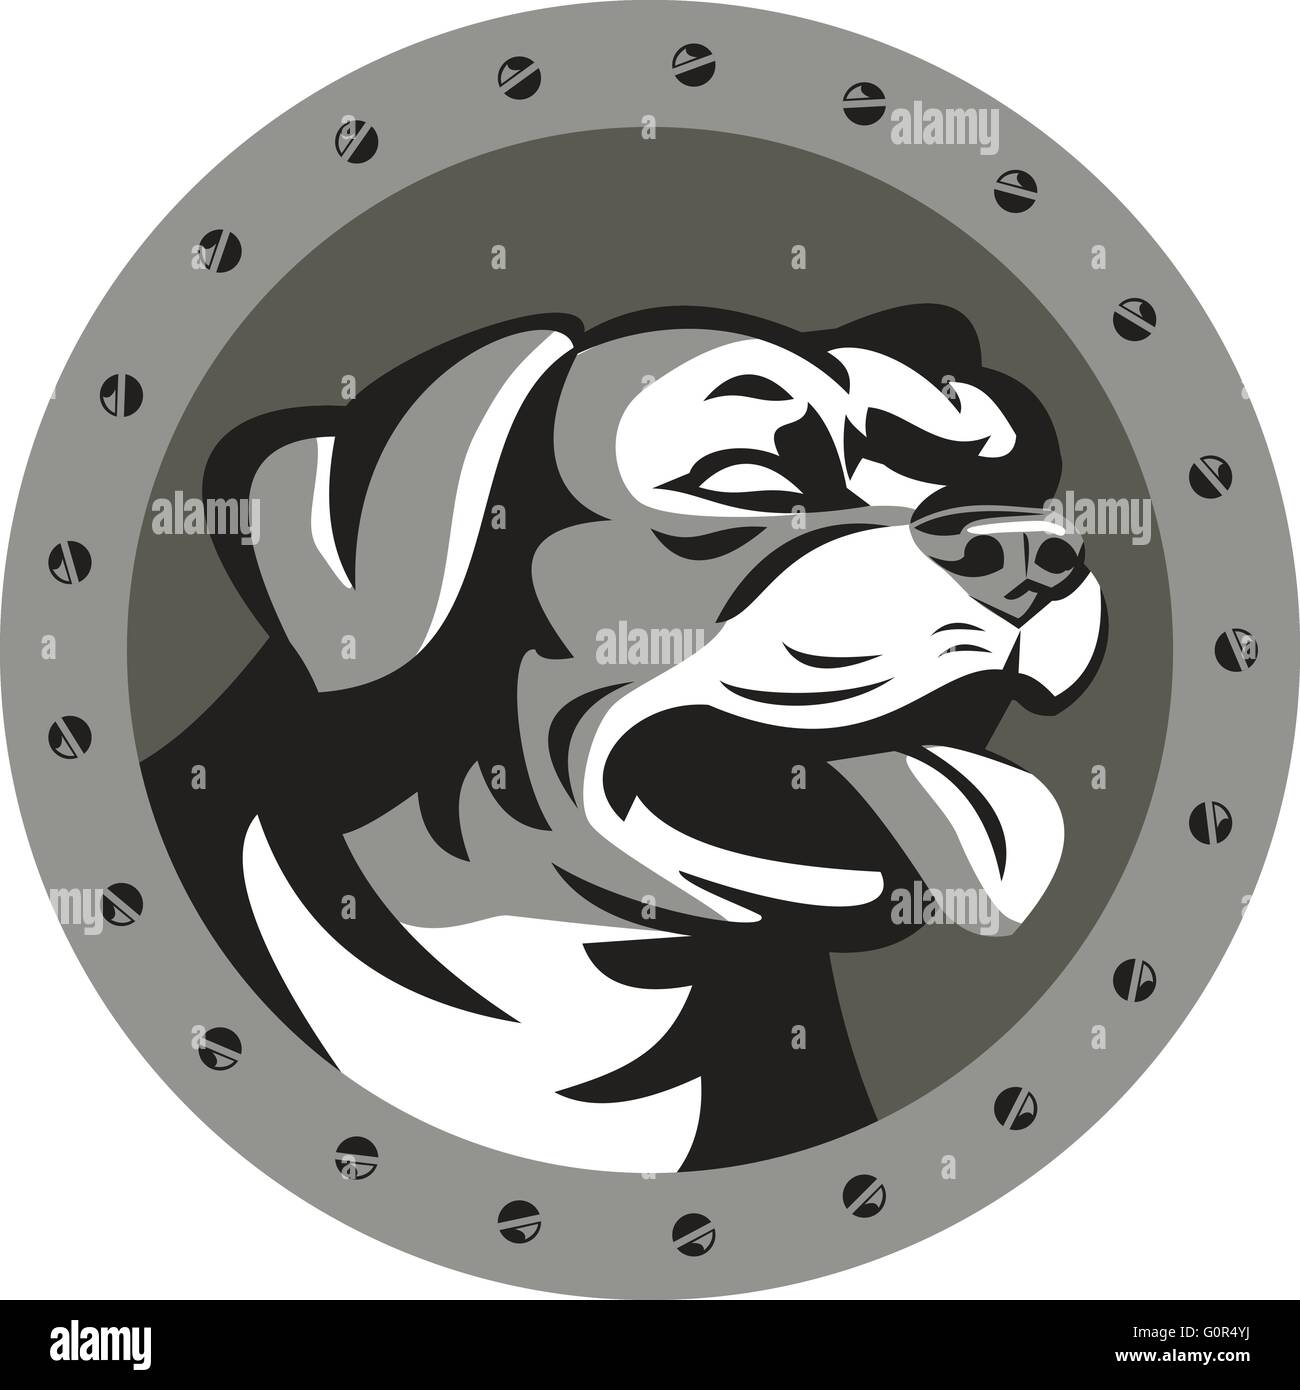 Stile metallico illustrazione di un rottweiler Metzgerhund mastiff-cane cane da guardia testa guardando al lato impostato all'interno del cerchio con viti fatto in stile retrò. Illustrazione Vettoriale